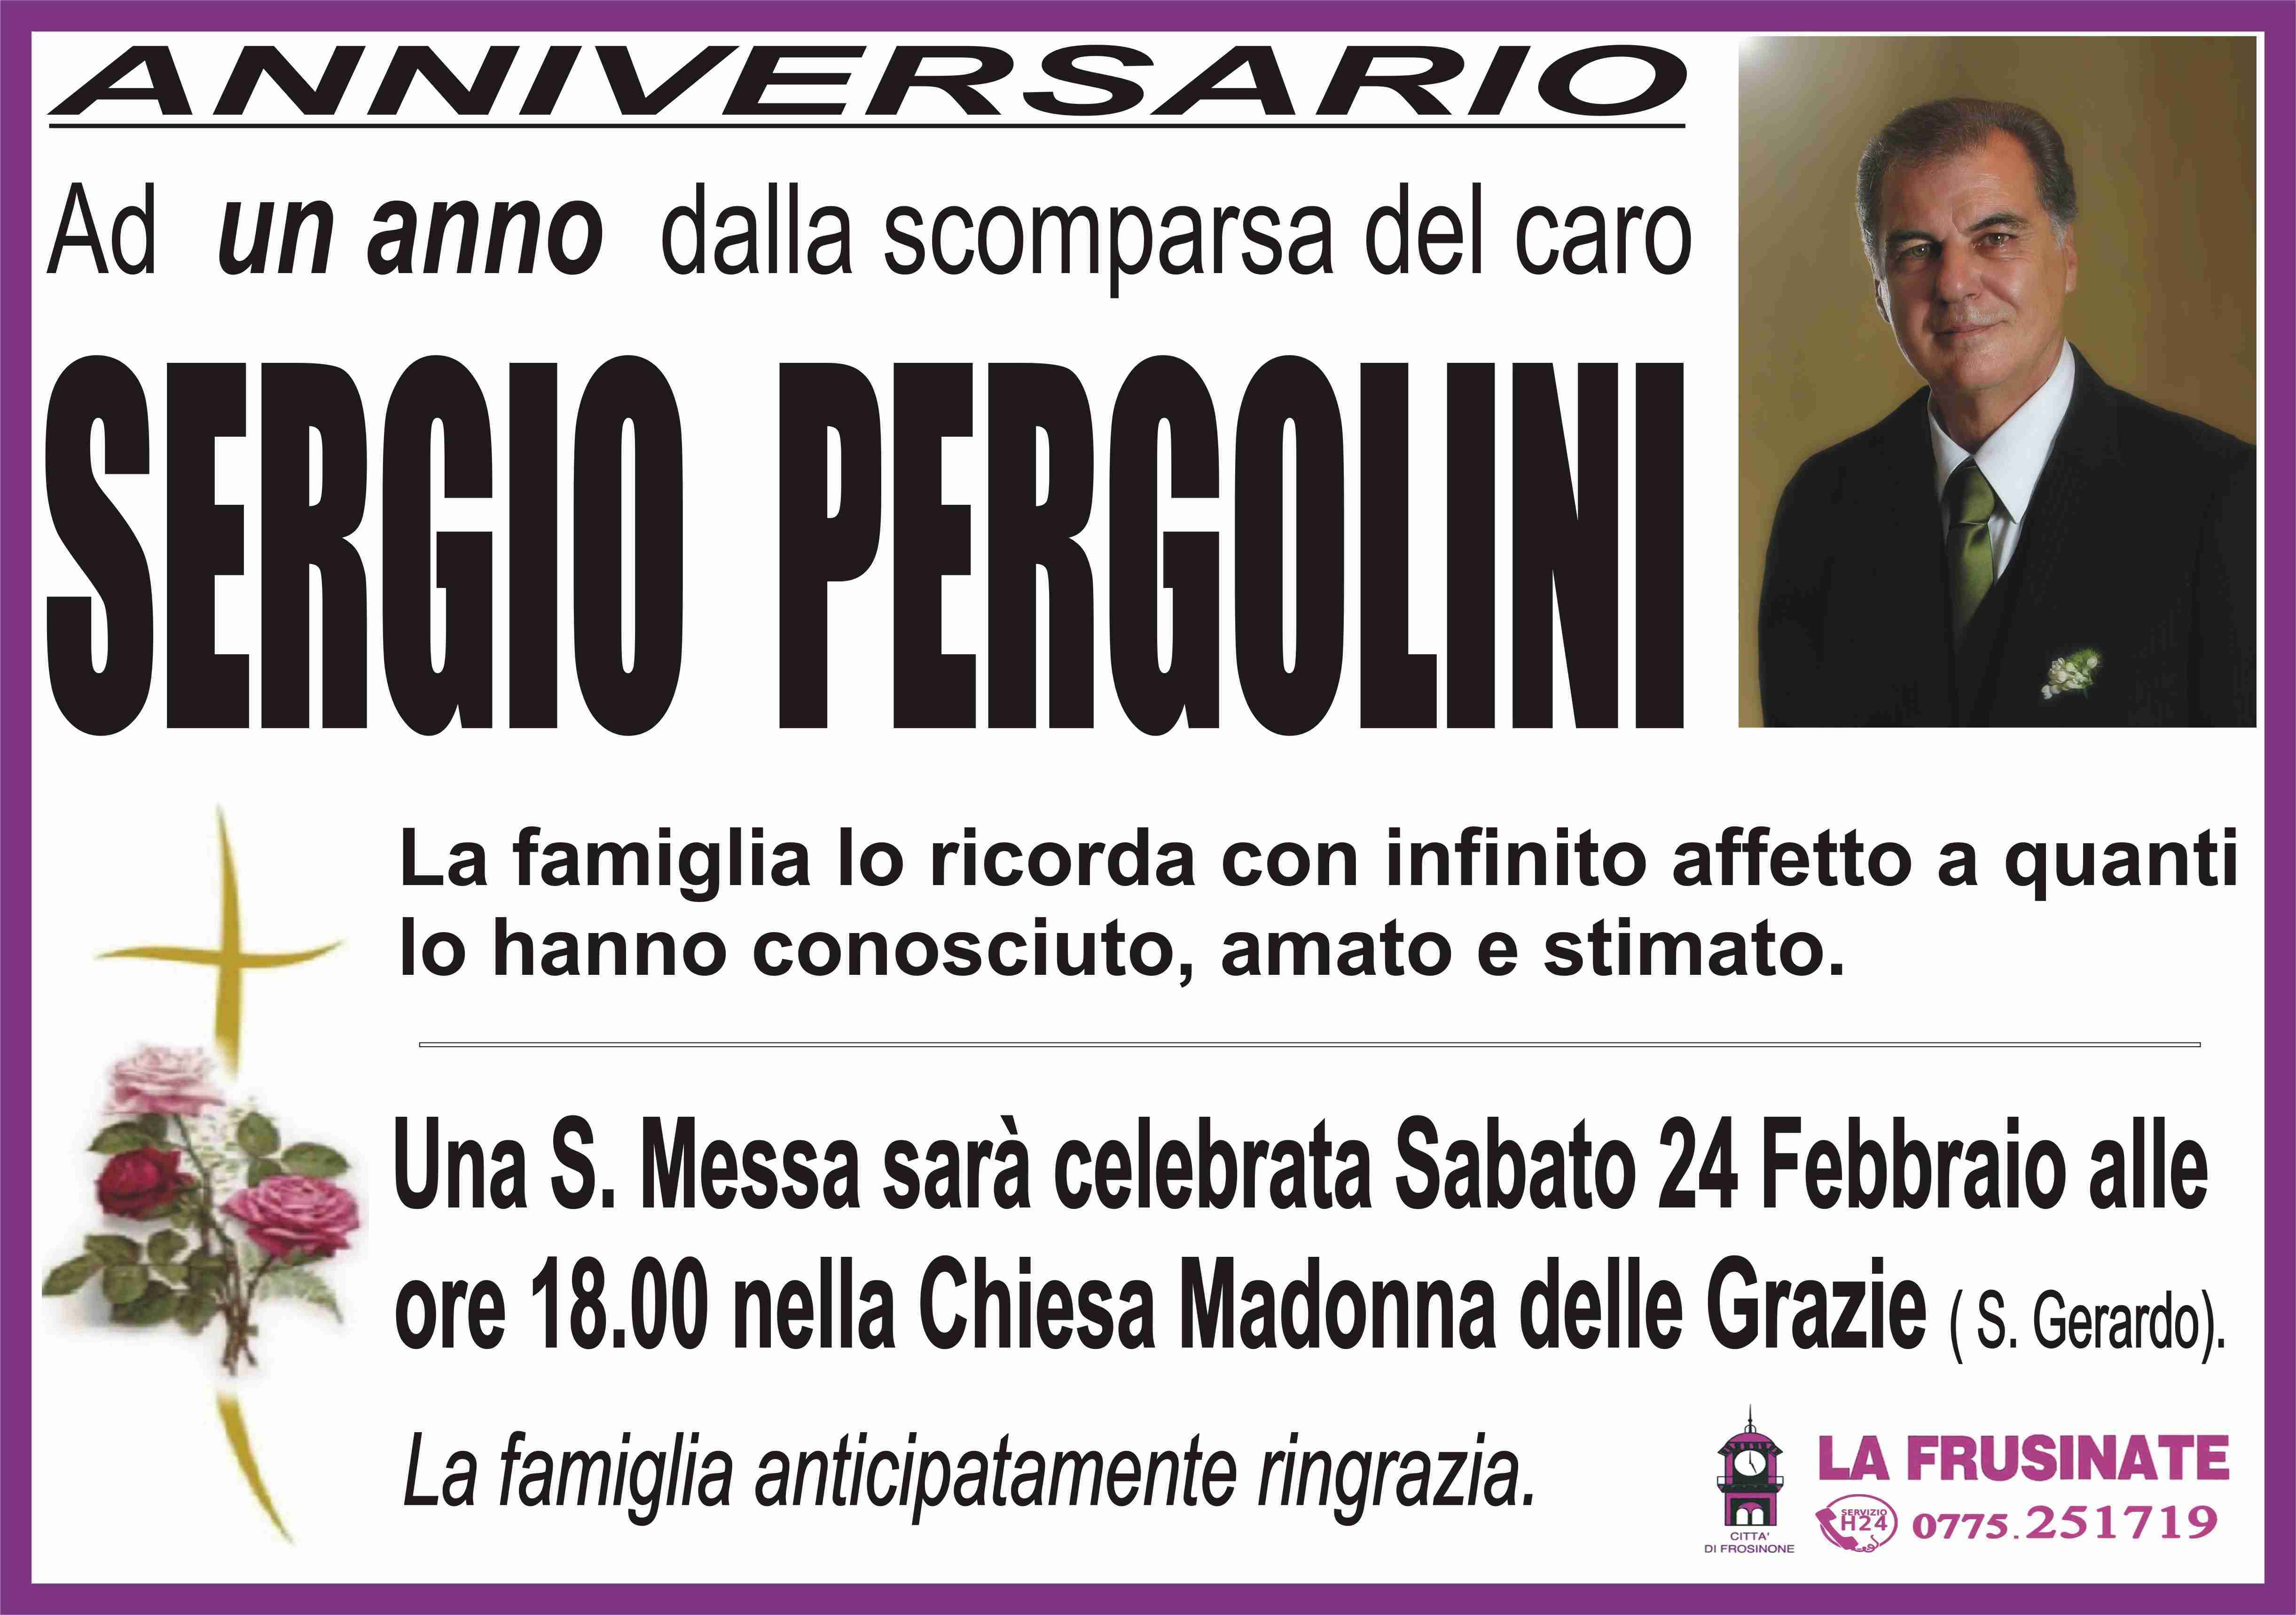 Sergio Pergolini